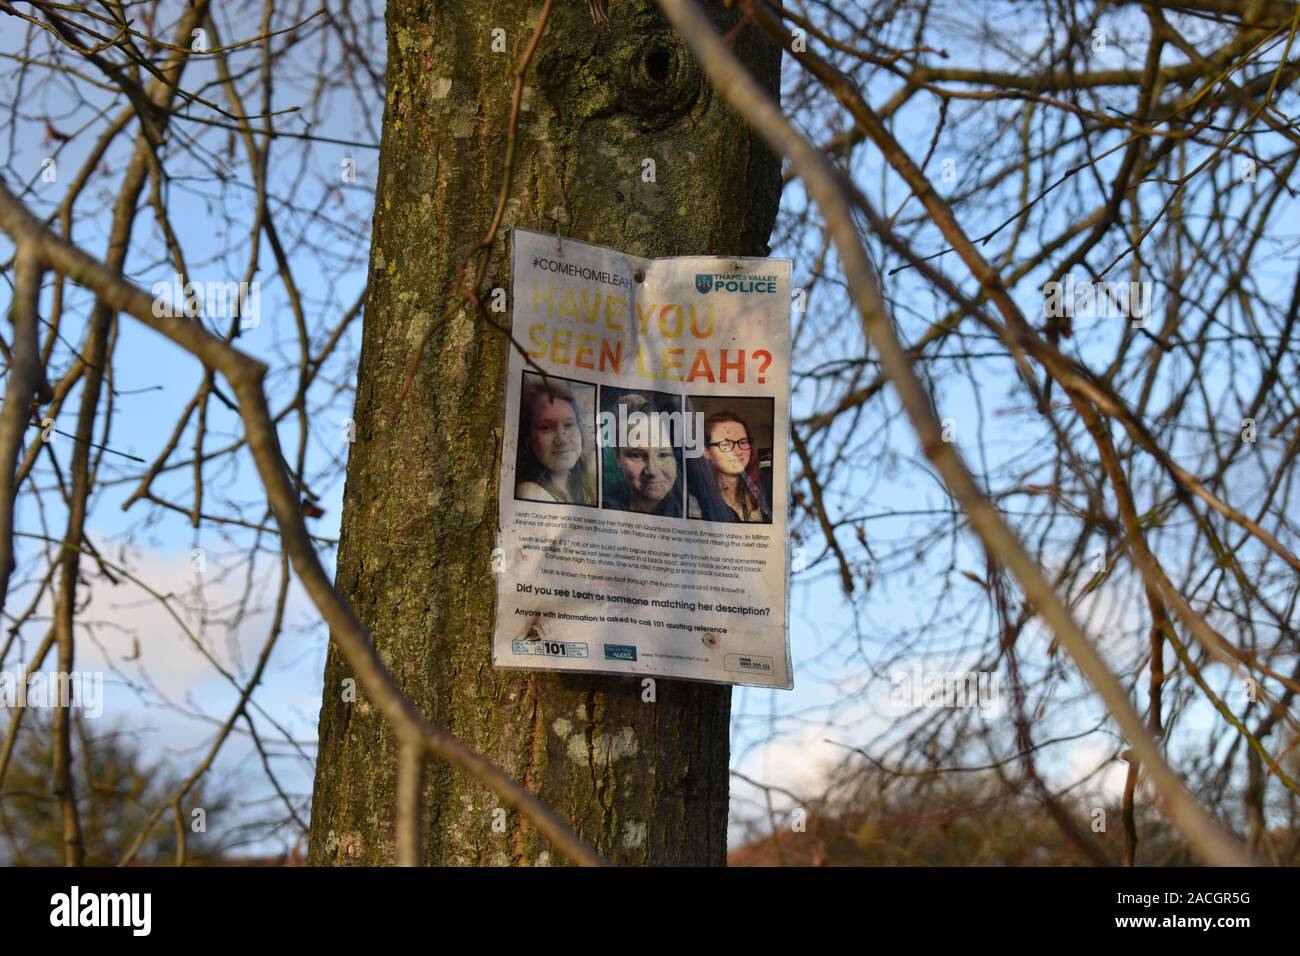 Appel de l'affiche pour plus d'informations sur Leah Croucher de Milton Keynes, qui a disparu en février 2019, âgé de 19 ans. Banque D'Images